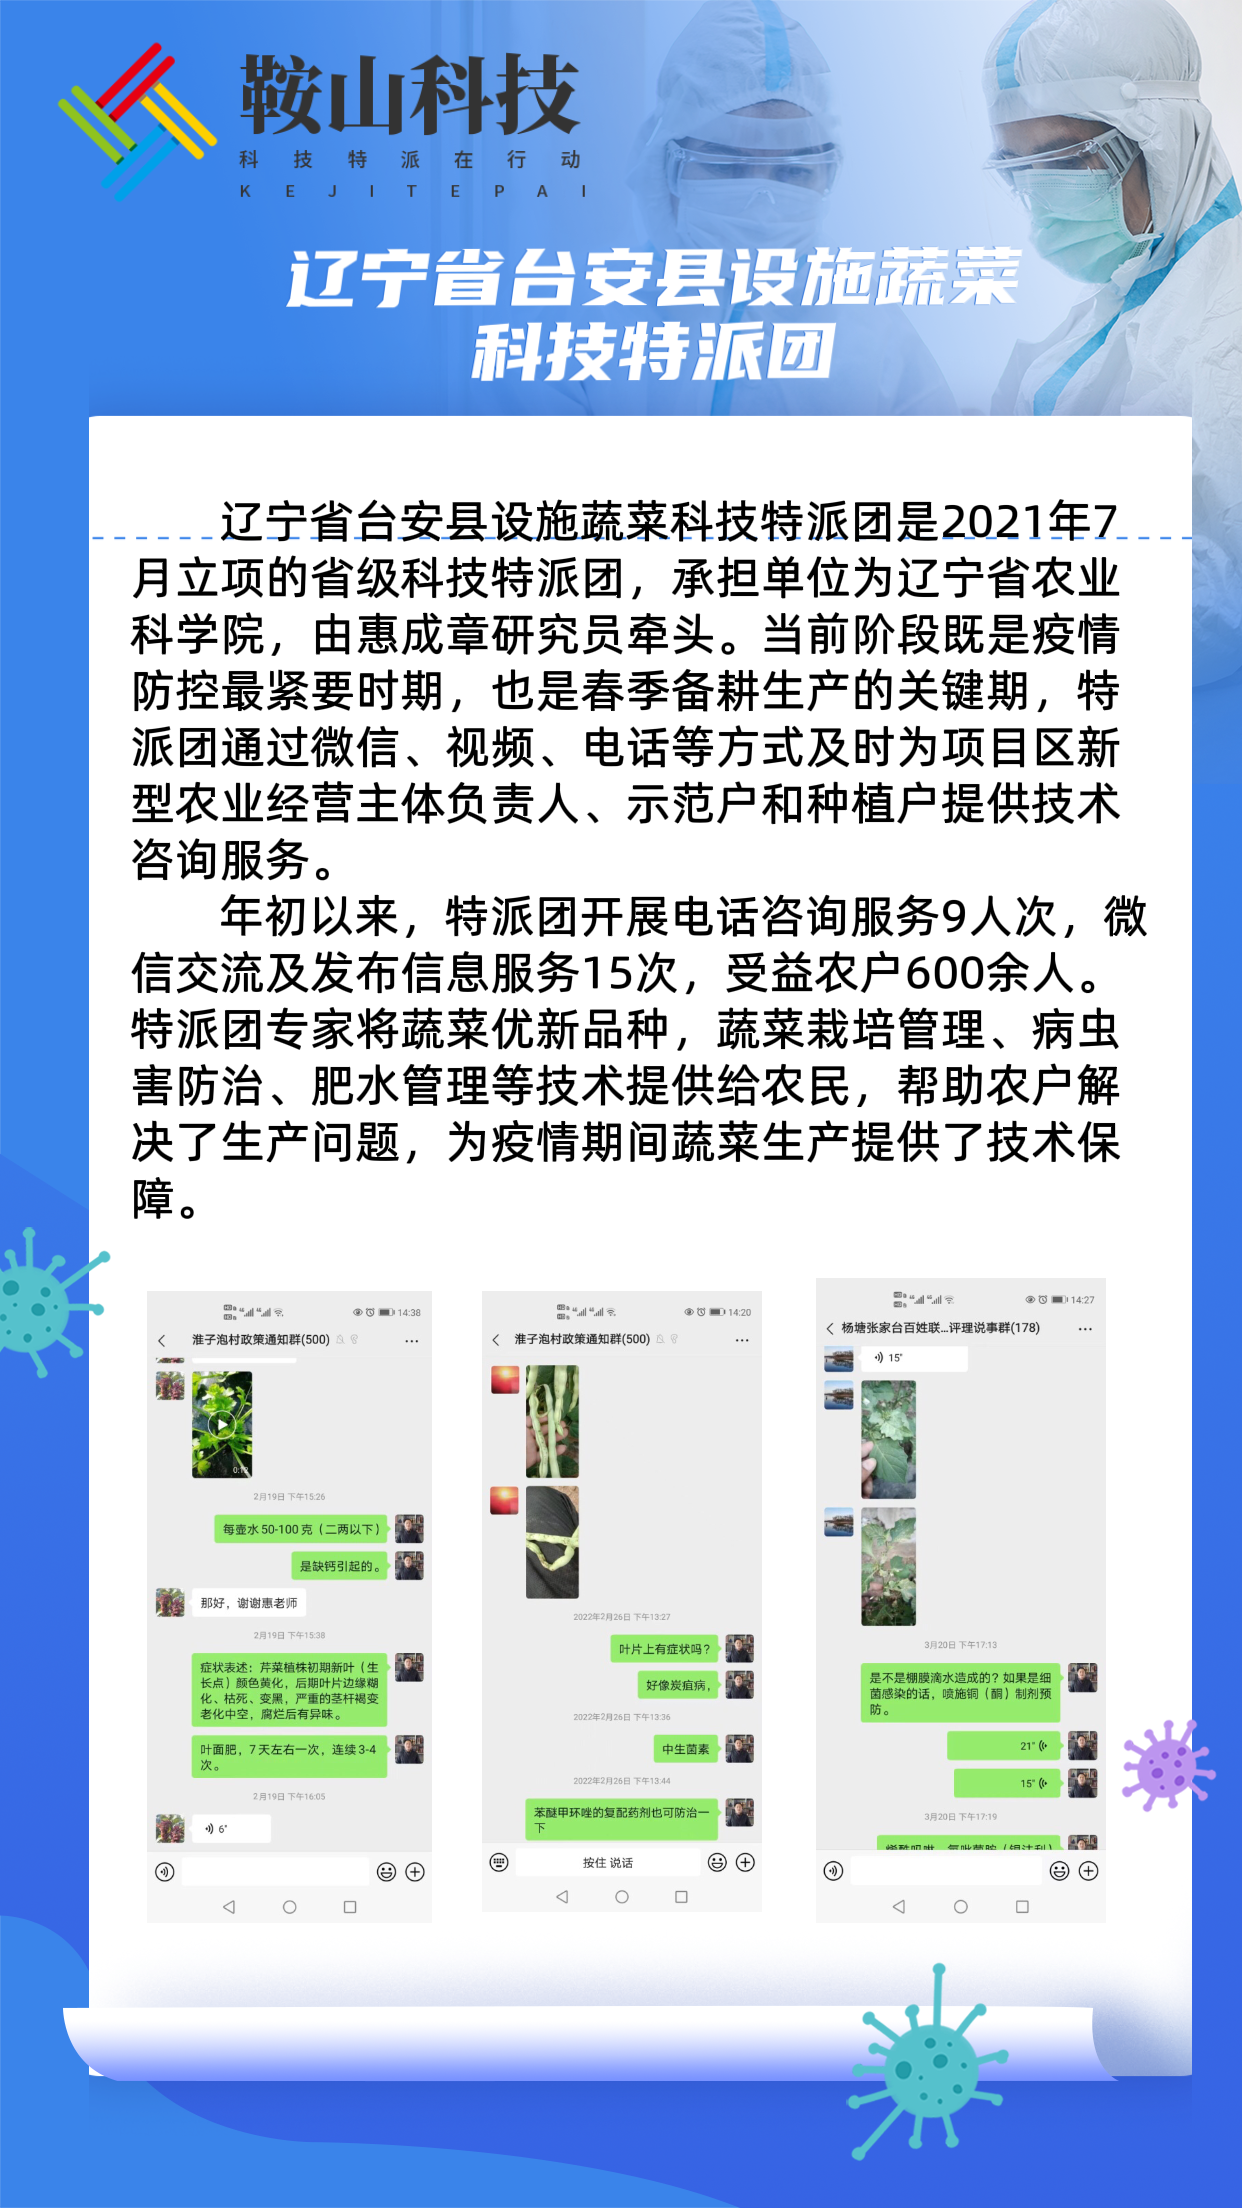 04 辽宁省台安县设施蔬菜科技特派团.png